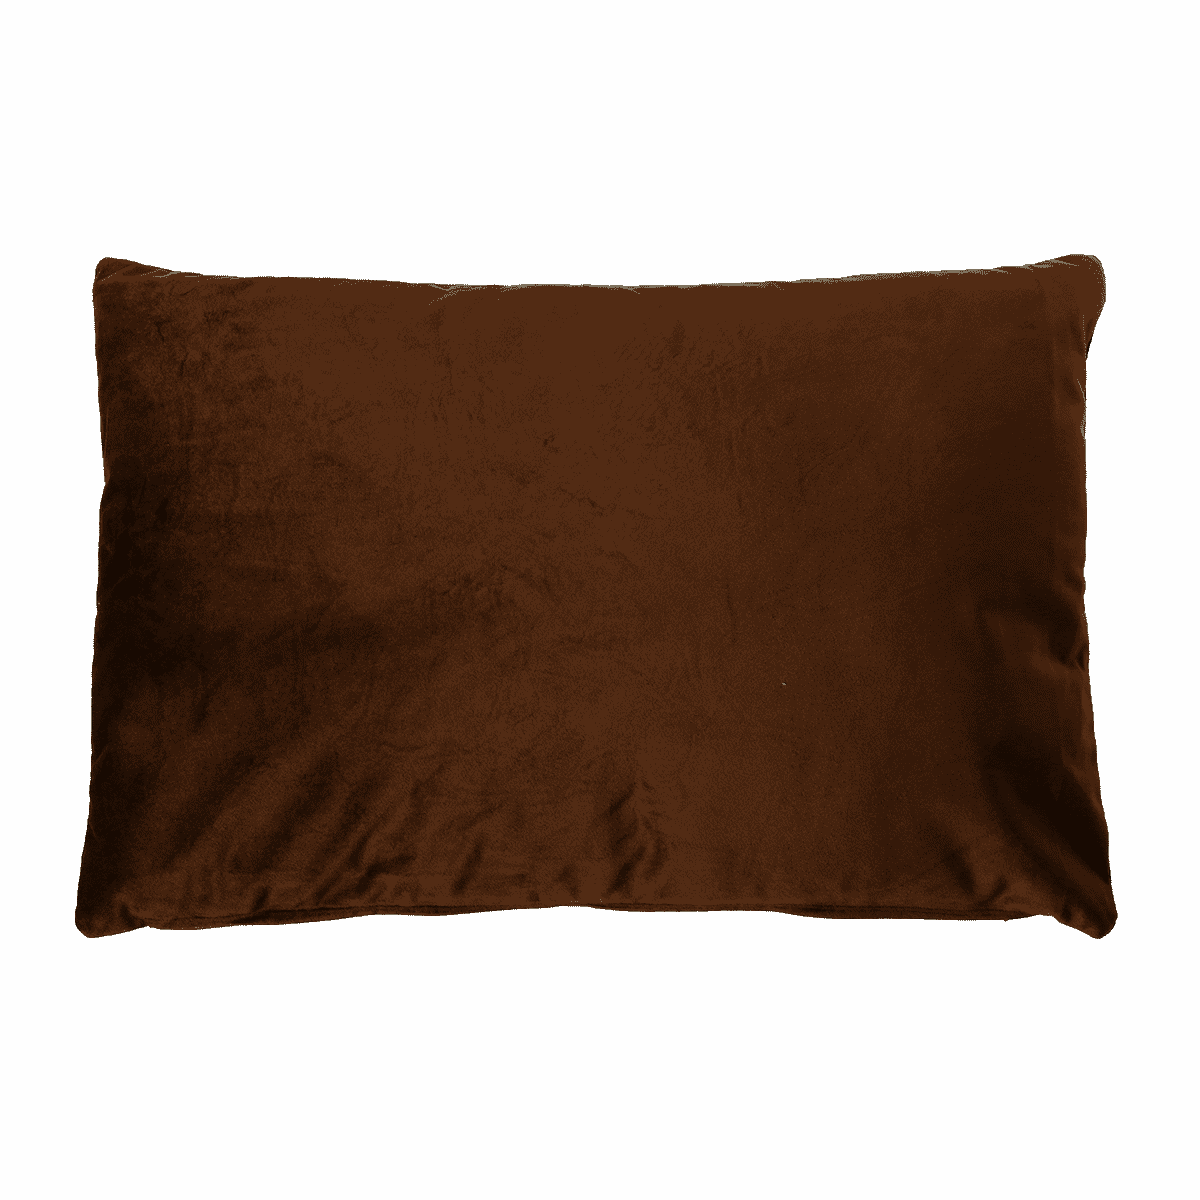 Velour pude "Cavallo" 40x60 cm mørkebrun